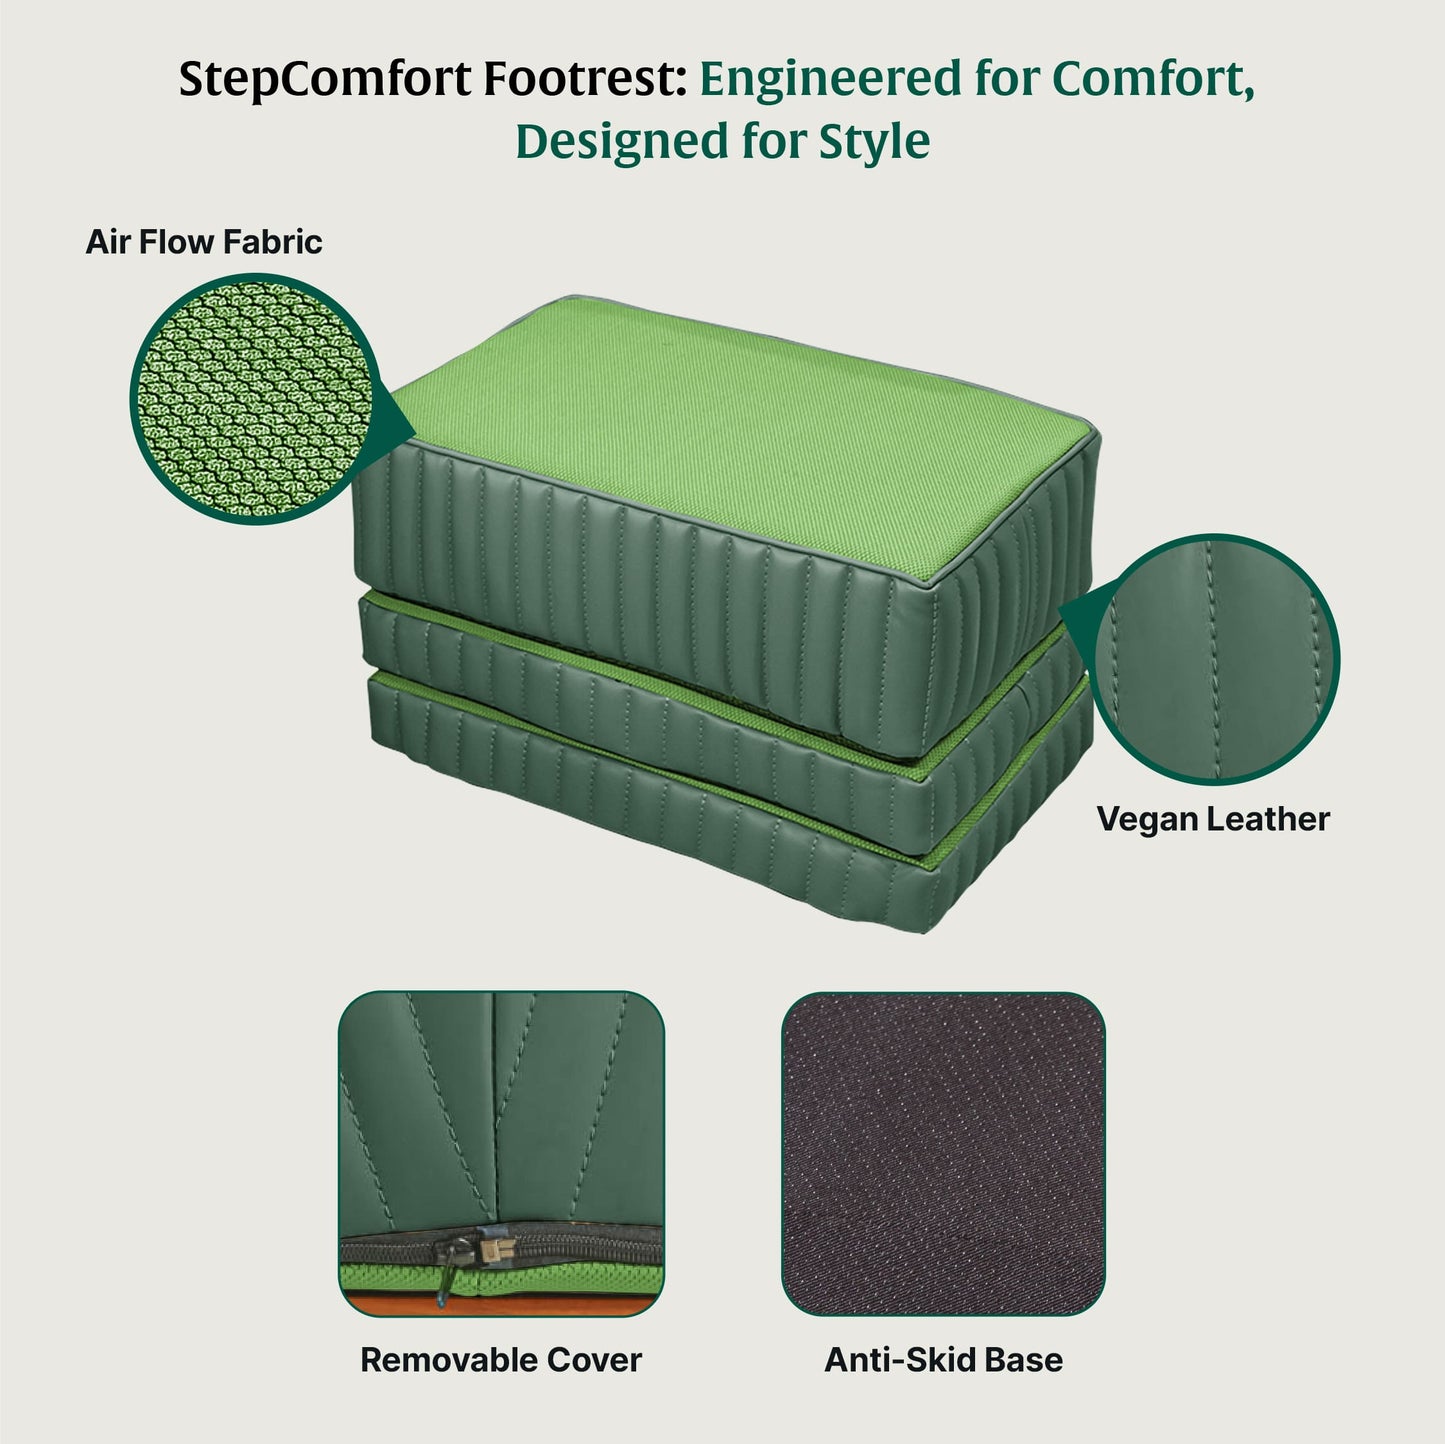 StepComfort Platform Footrest